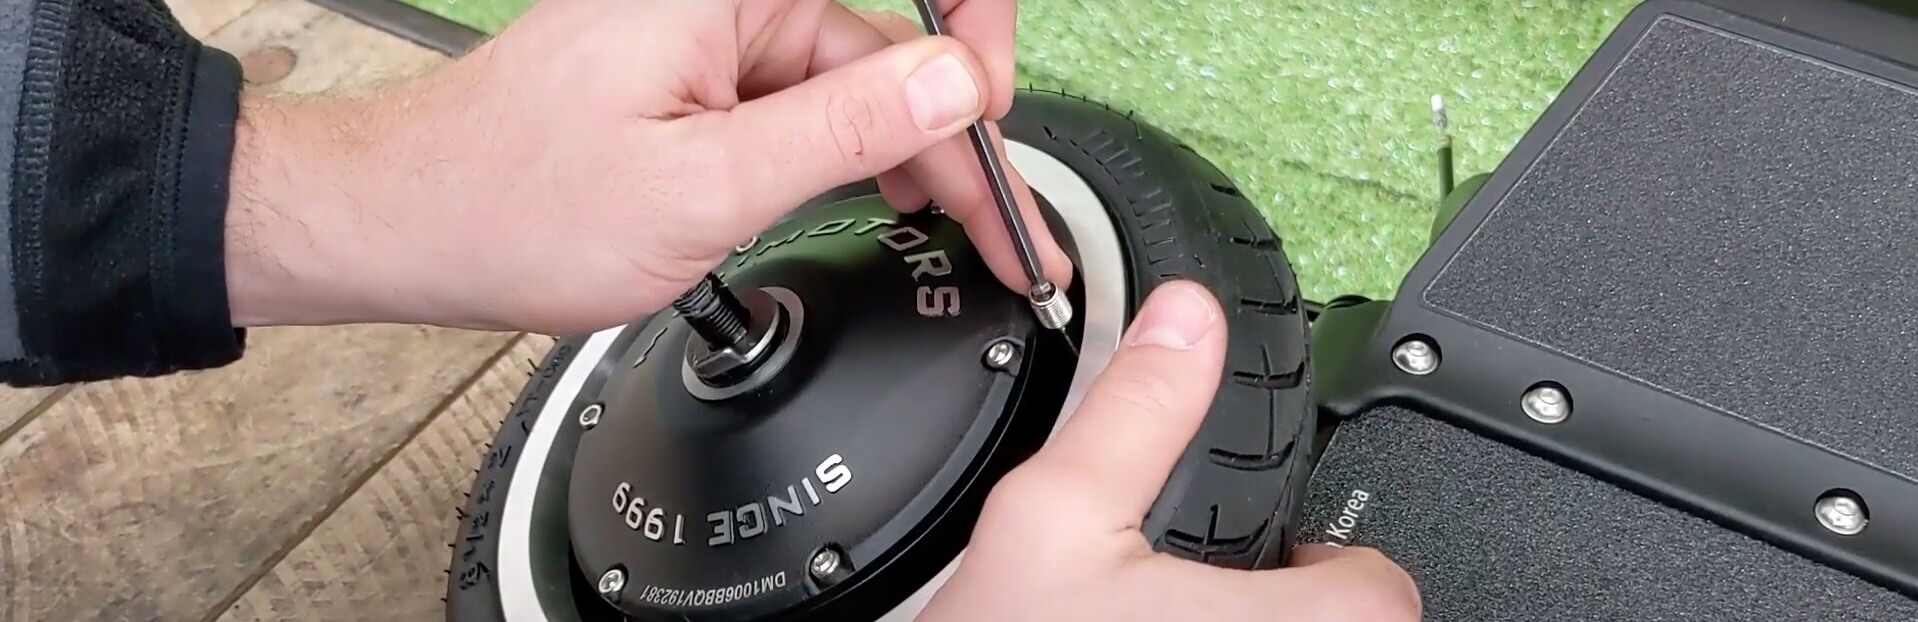 Dualtron Mini - Roue Arriere - Désolidariser le pneu du moteur